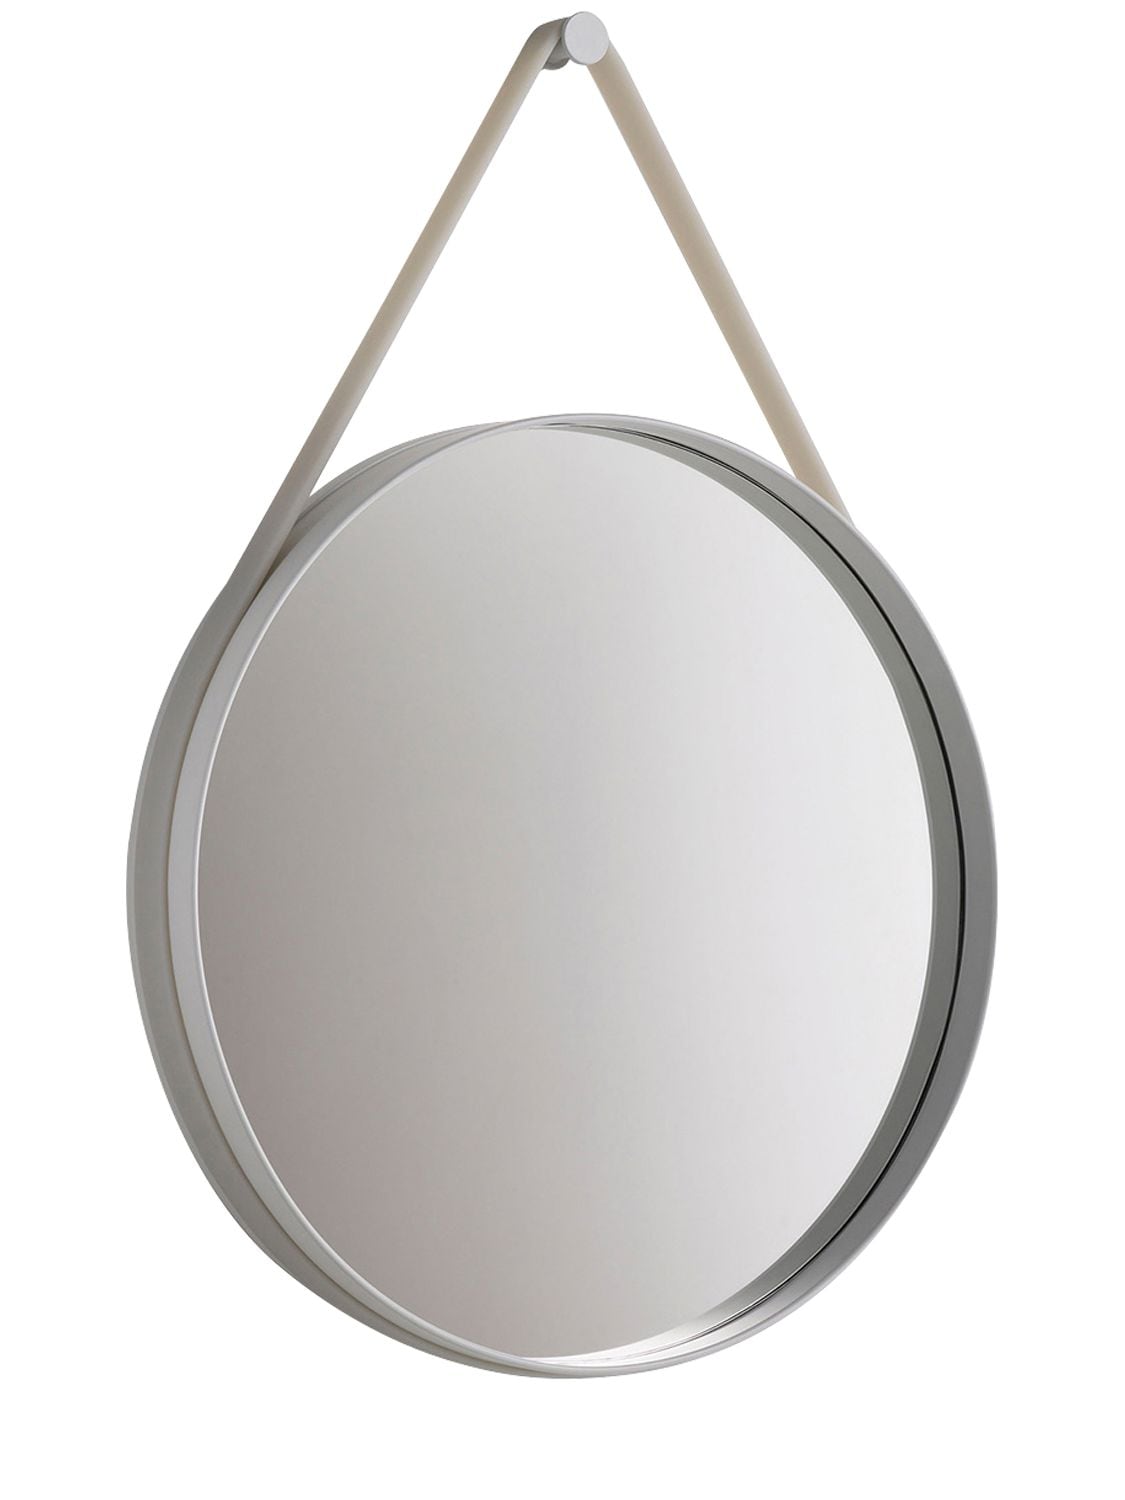 Hay Strap Mirror No 2 圆形设计镜子 In Grey/grey